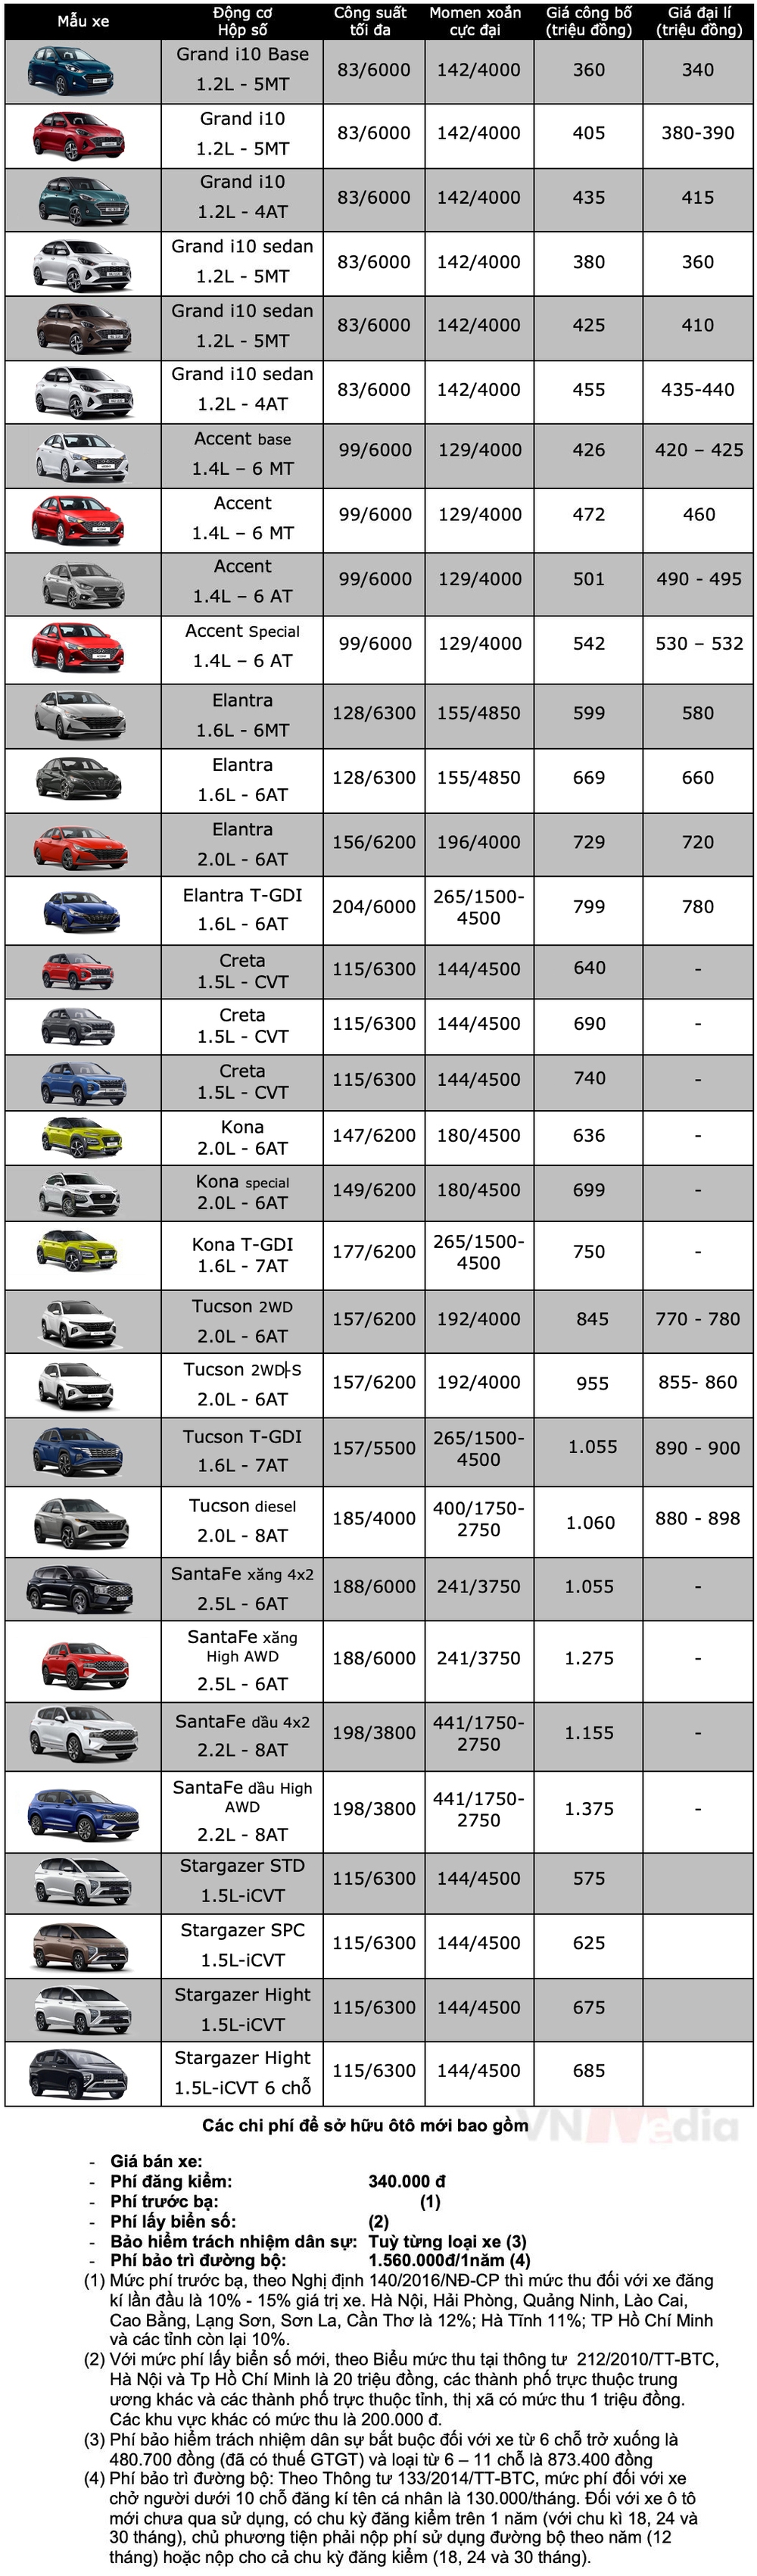 Bảng giá xe Hyundai tháng 4: Accent được ưu đãi tới 55 triệu đồng - Ảnh 2.